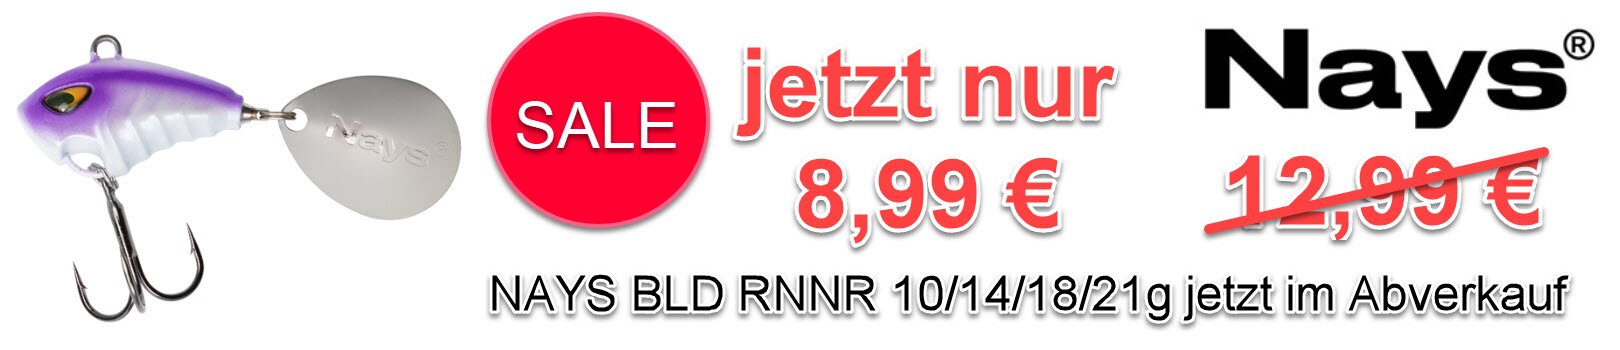 Jetzt im Abverkauf NAYS BLD RNNR 10/14/18/21g | alle Farben für nur 8,99€ statt 12,99€